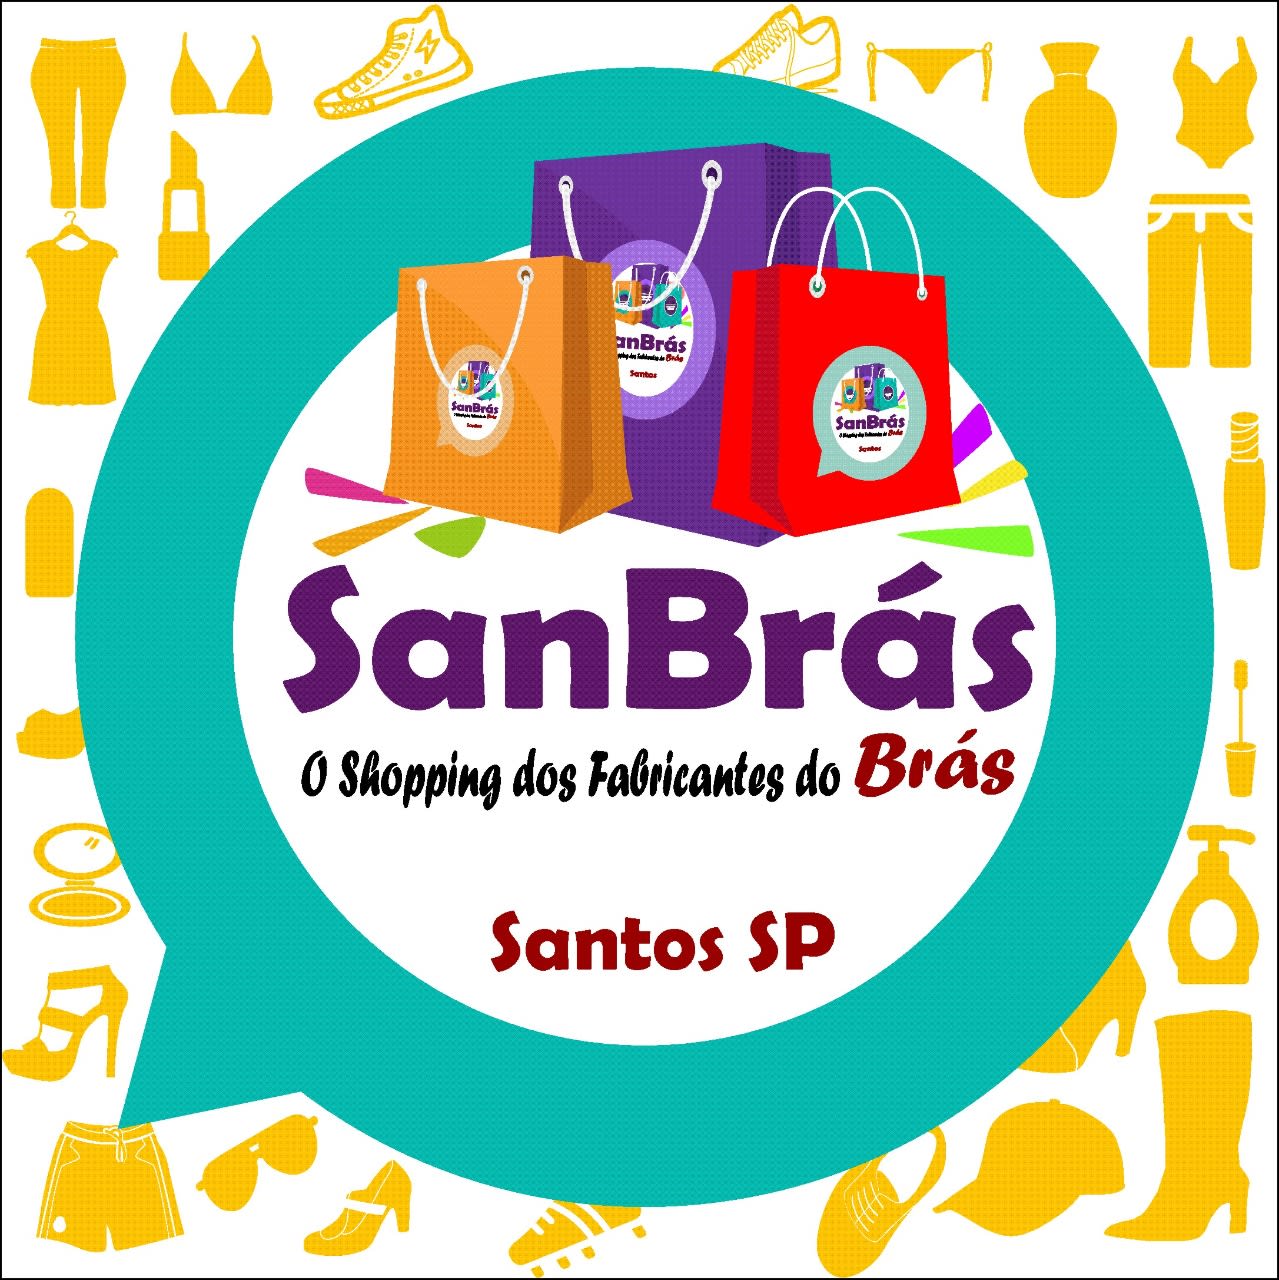 Sanbras